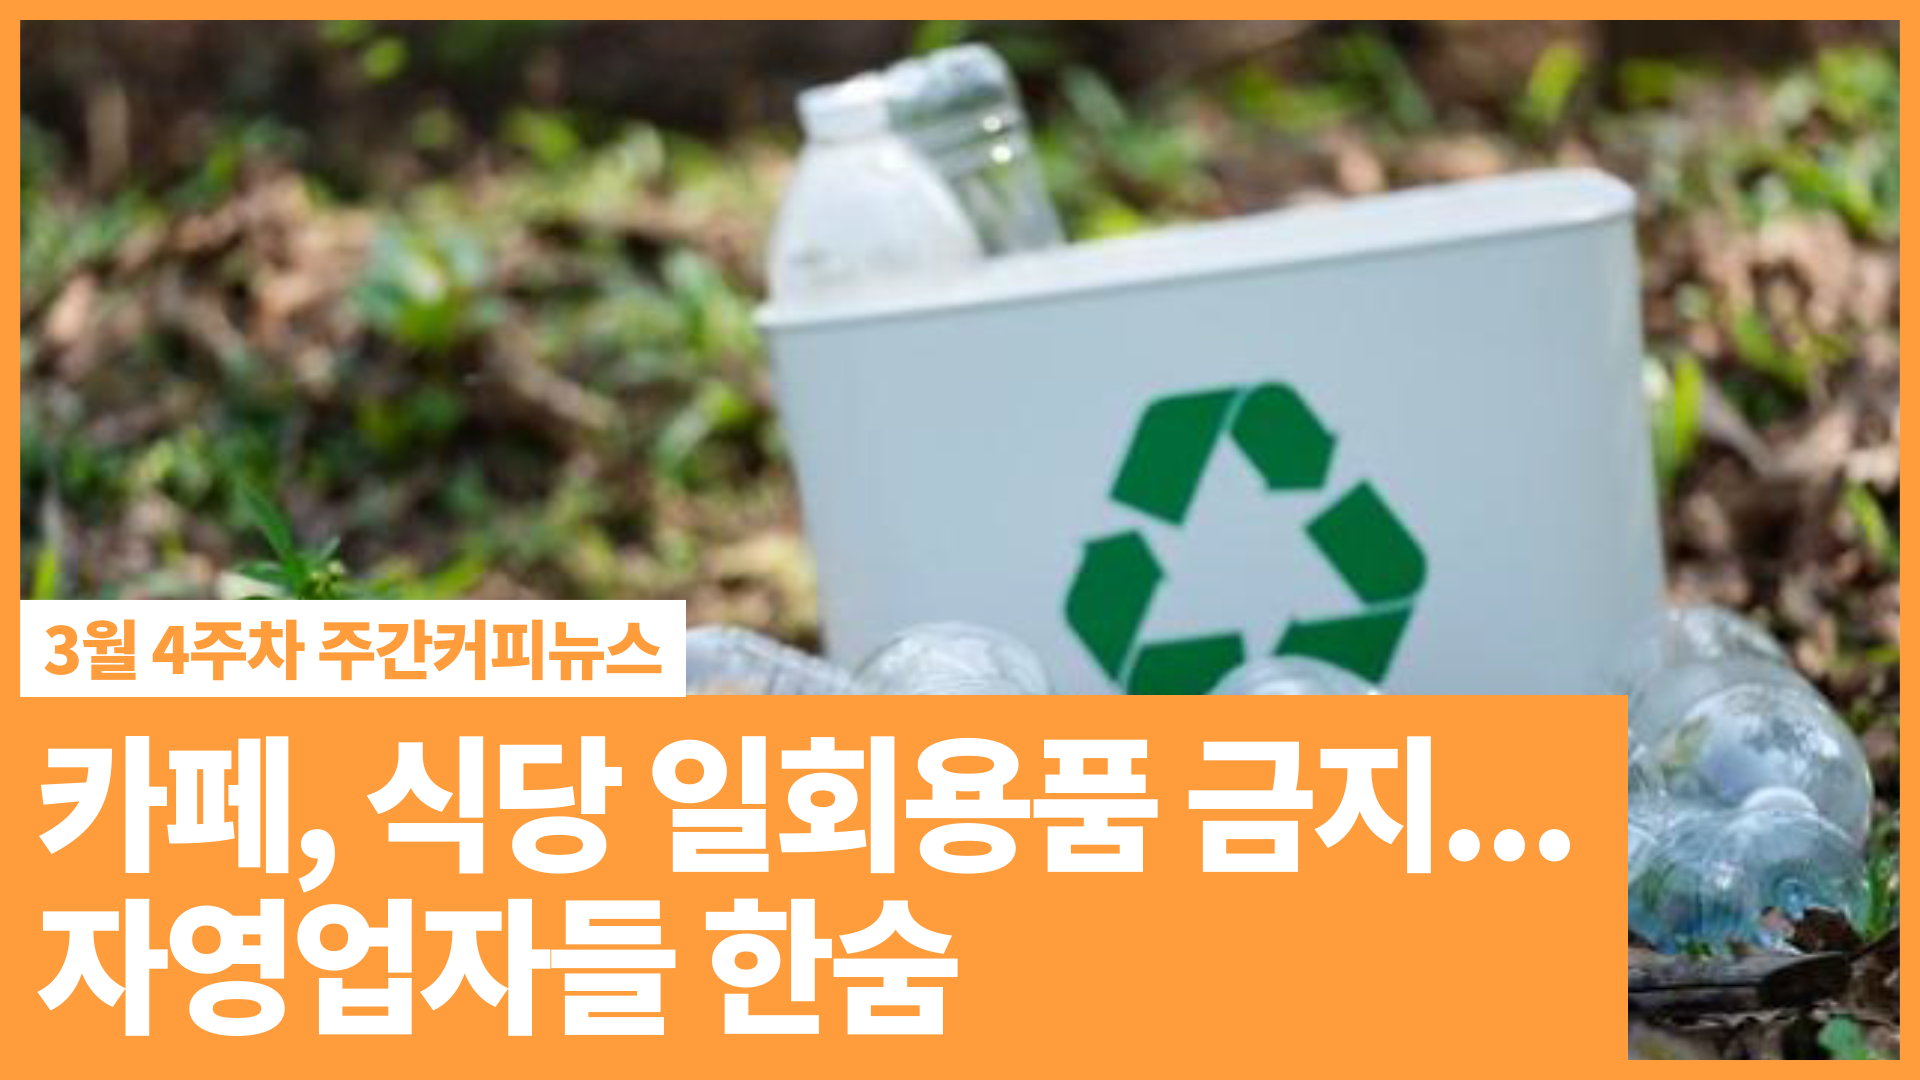 카페, 식당 일회용품 금지... 자영업자들 한숨 | 3월 4주차 주간커피뉴스